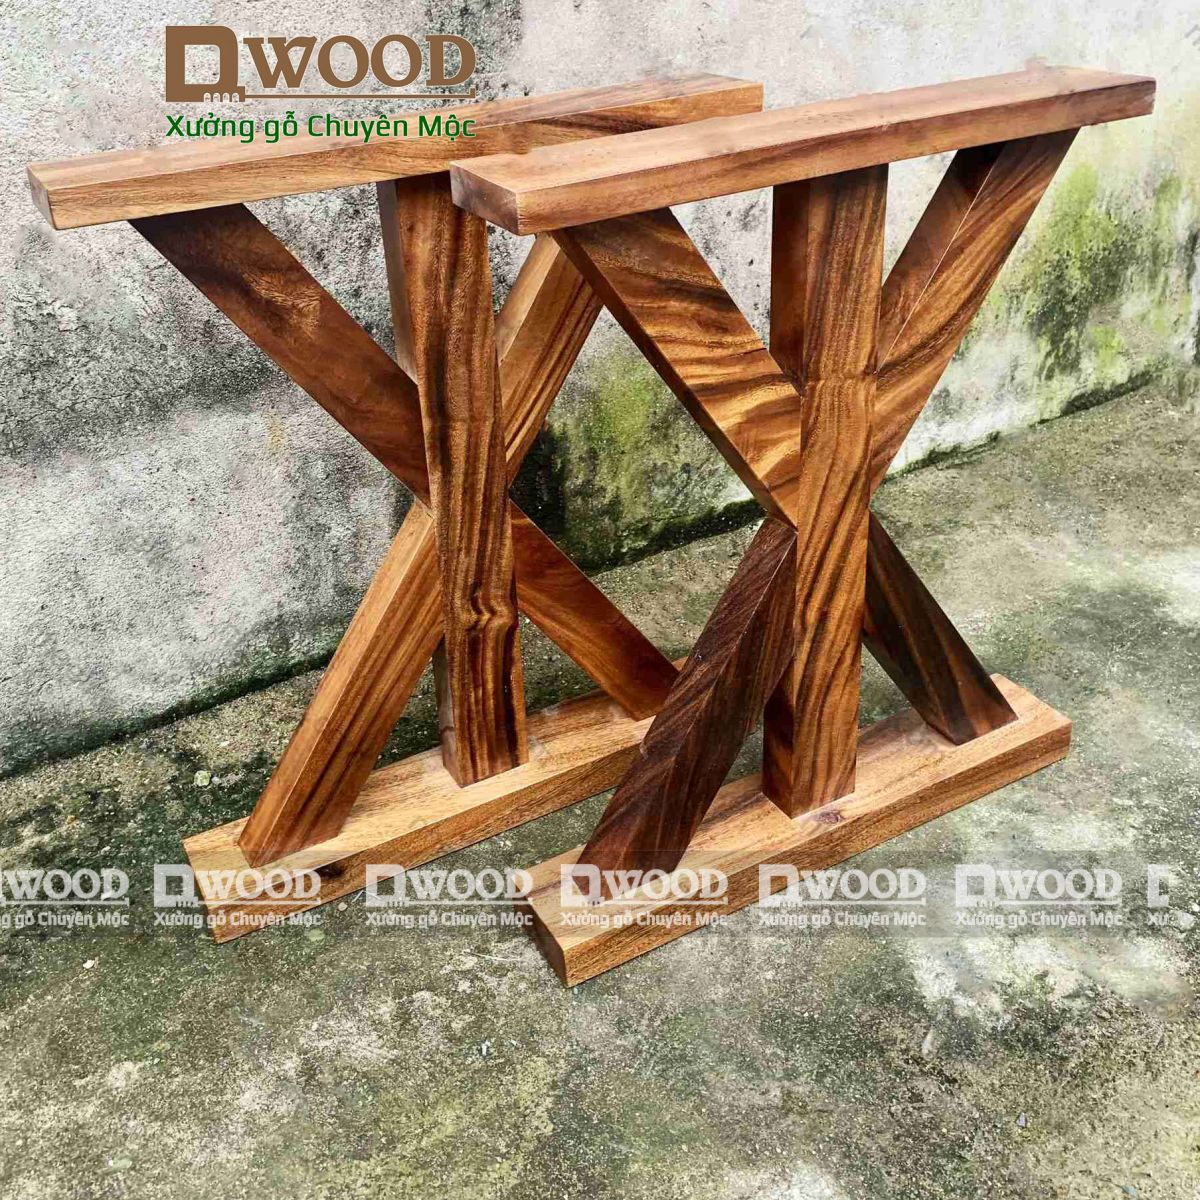 Chân bàn Dwood chữ X gỗ me tây